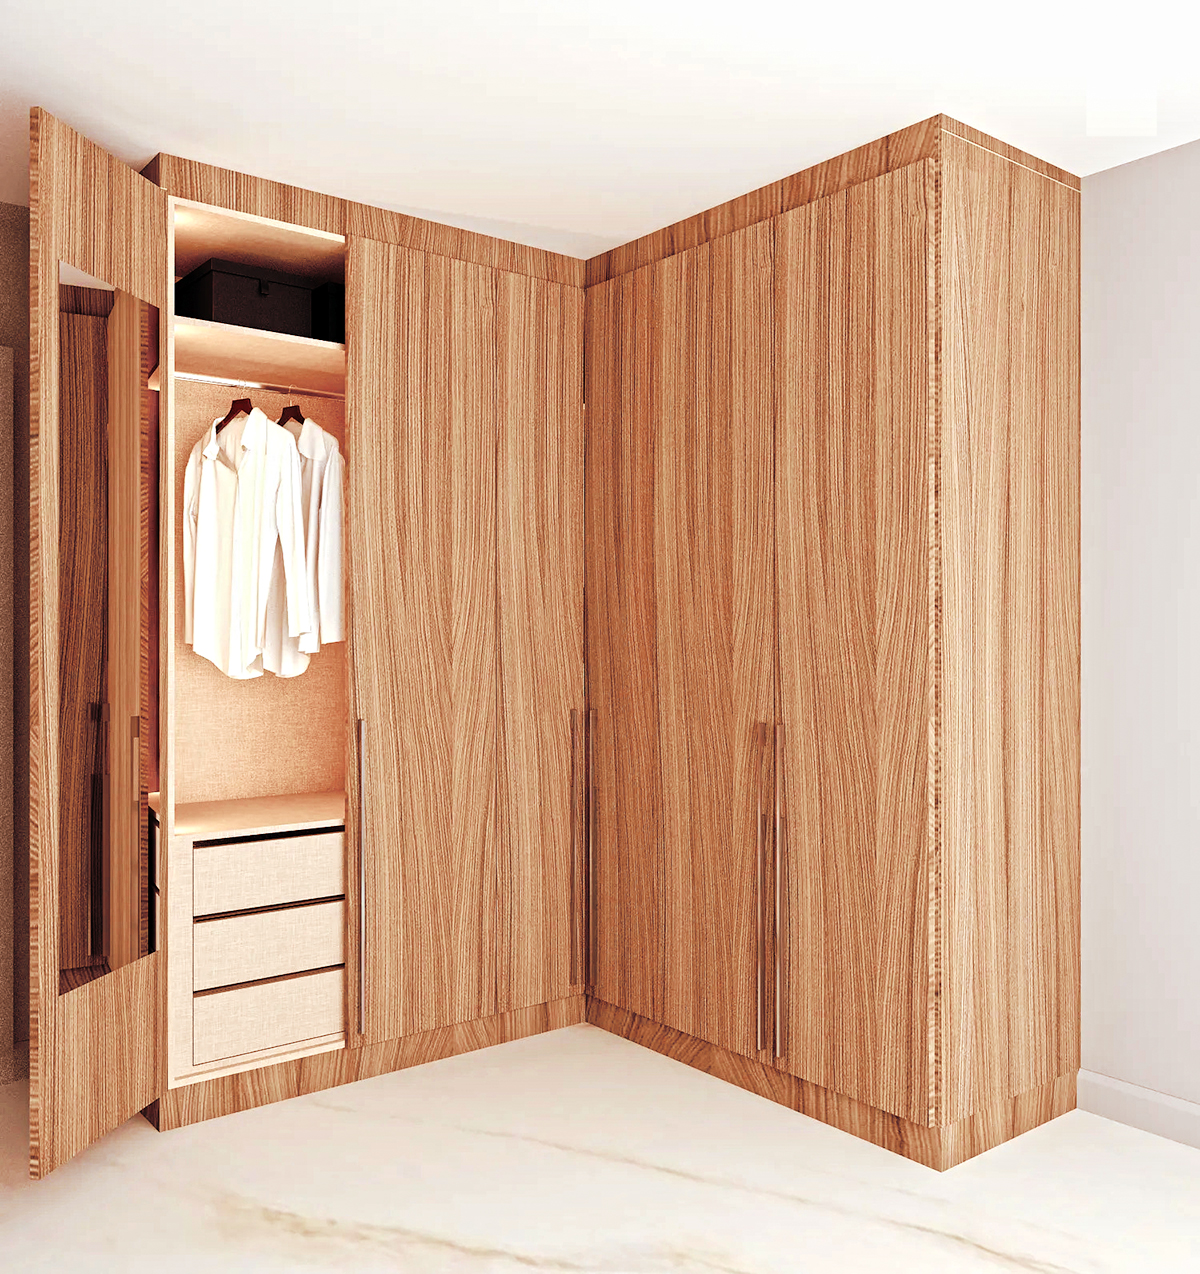 Bedroom-Built-In-Corner Cabinets